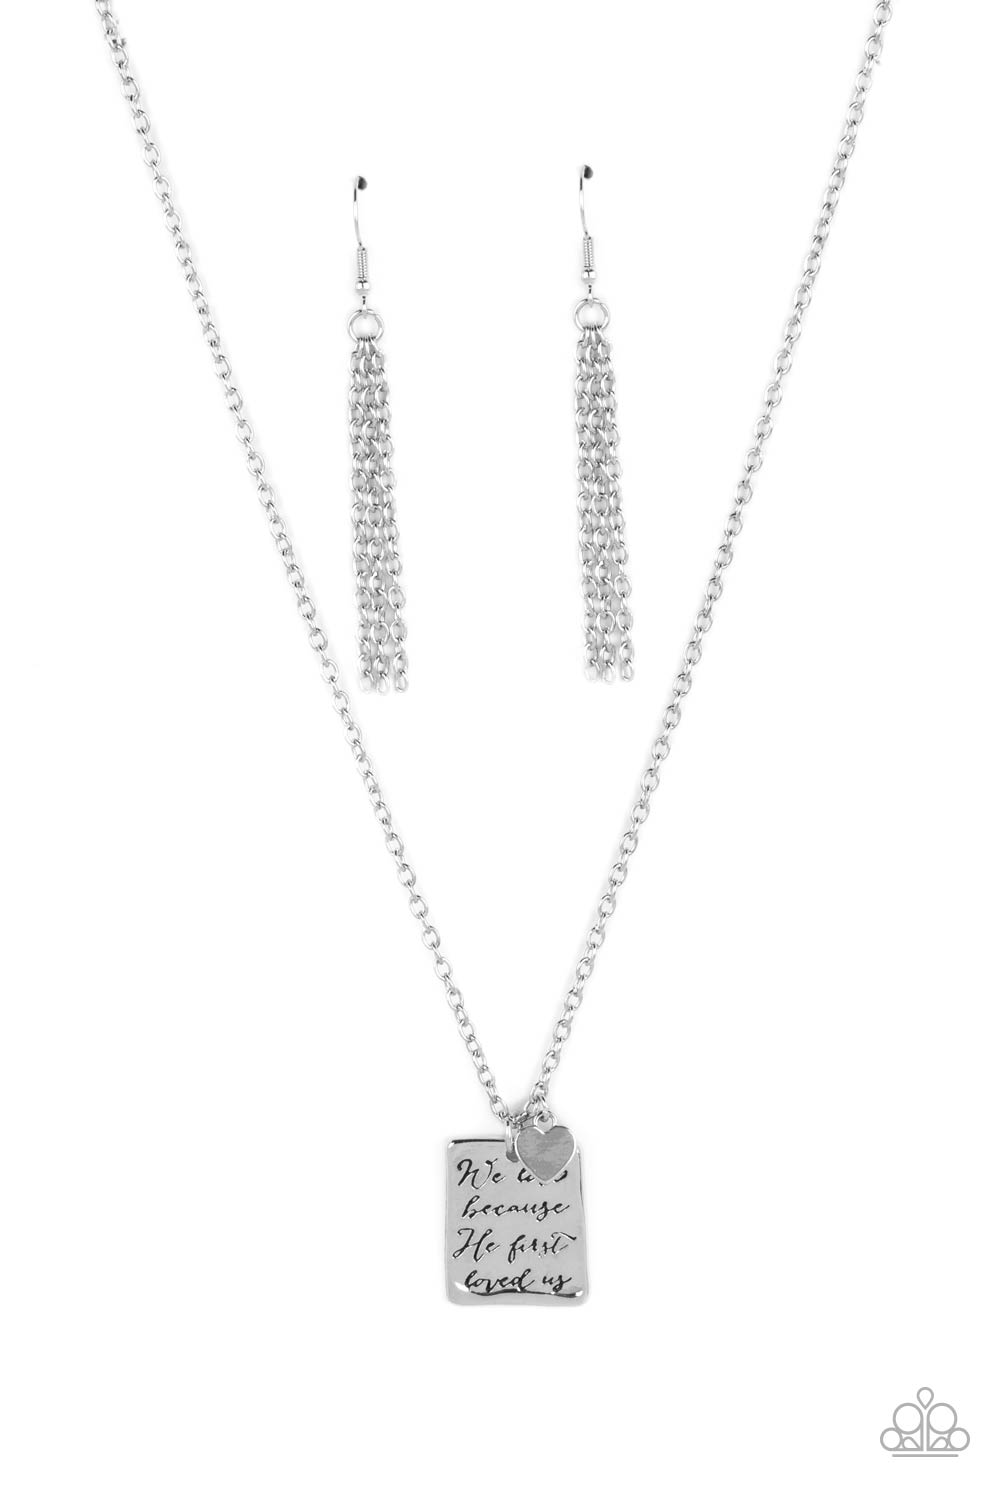 Divine Devotion - Silver Necklace Set - Princess Glam Shop